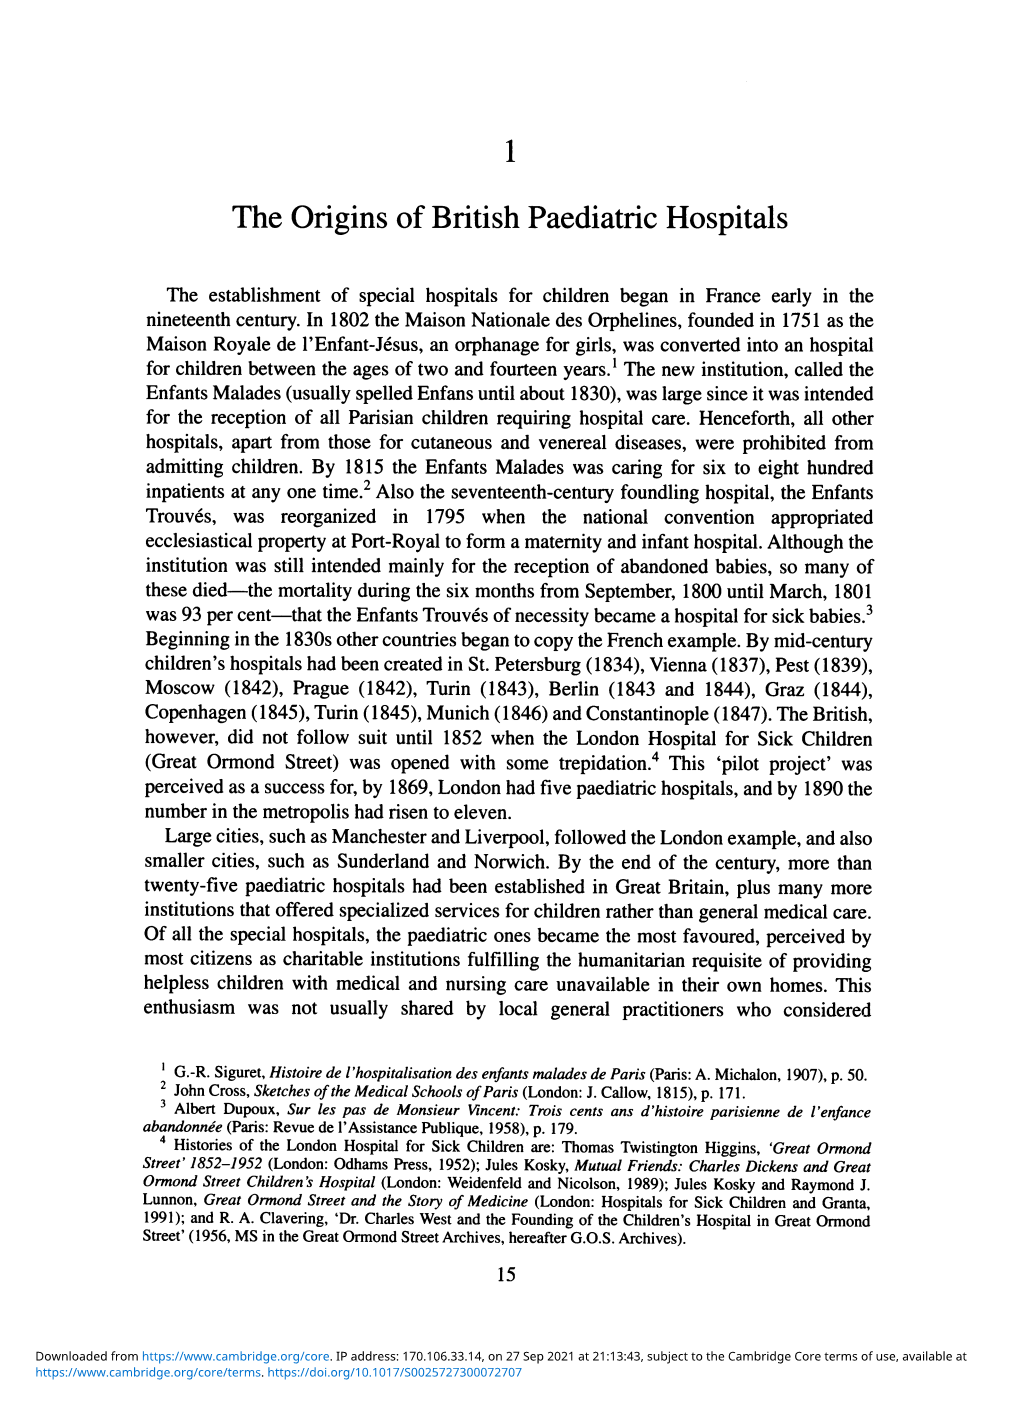 The Origins of British Paediatric Hospitals